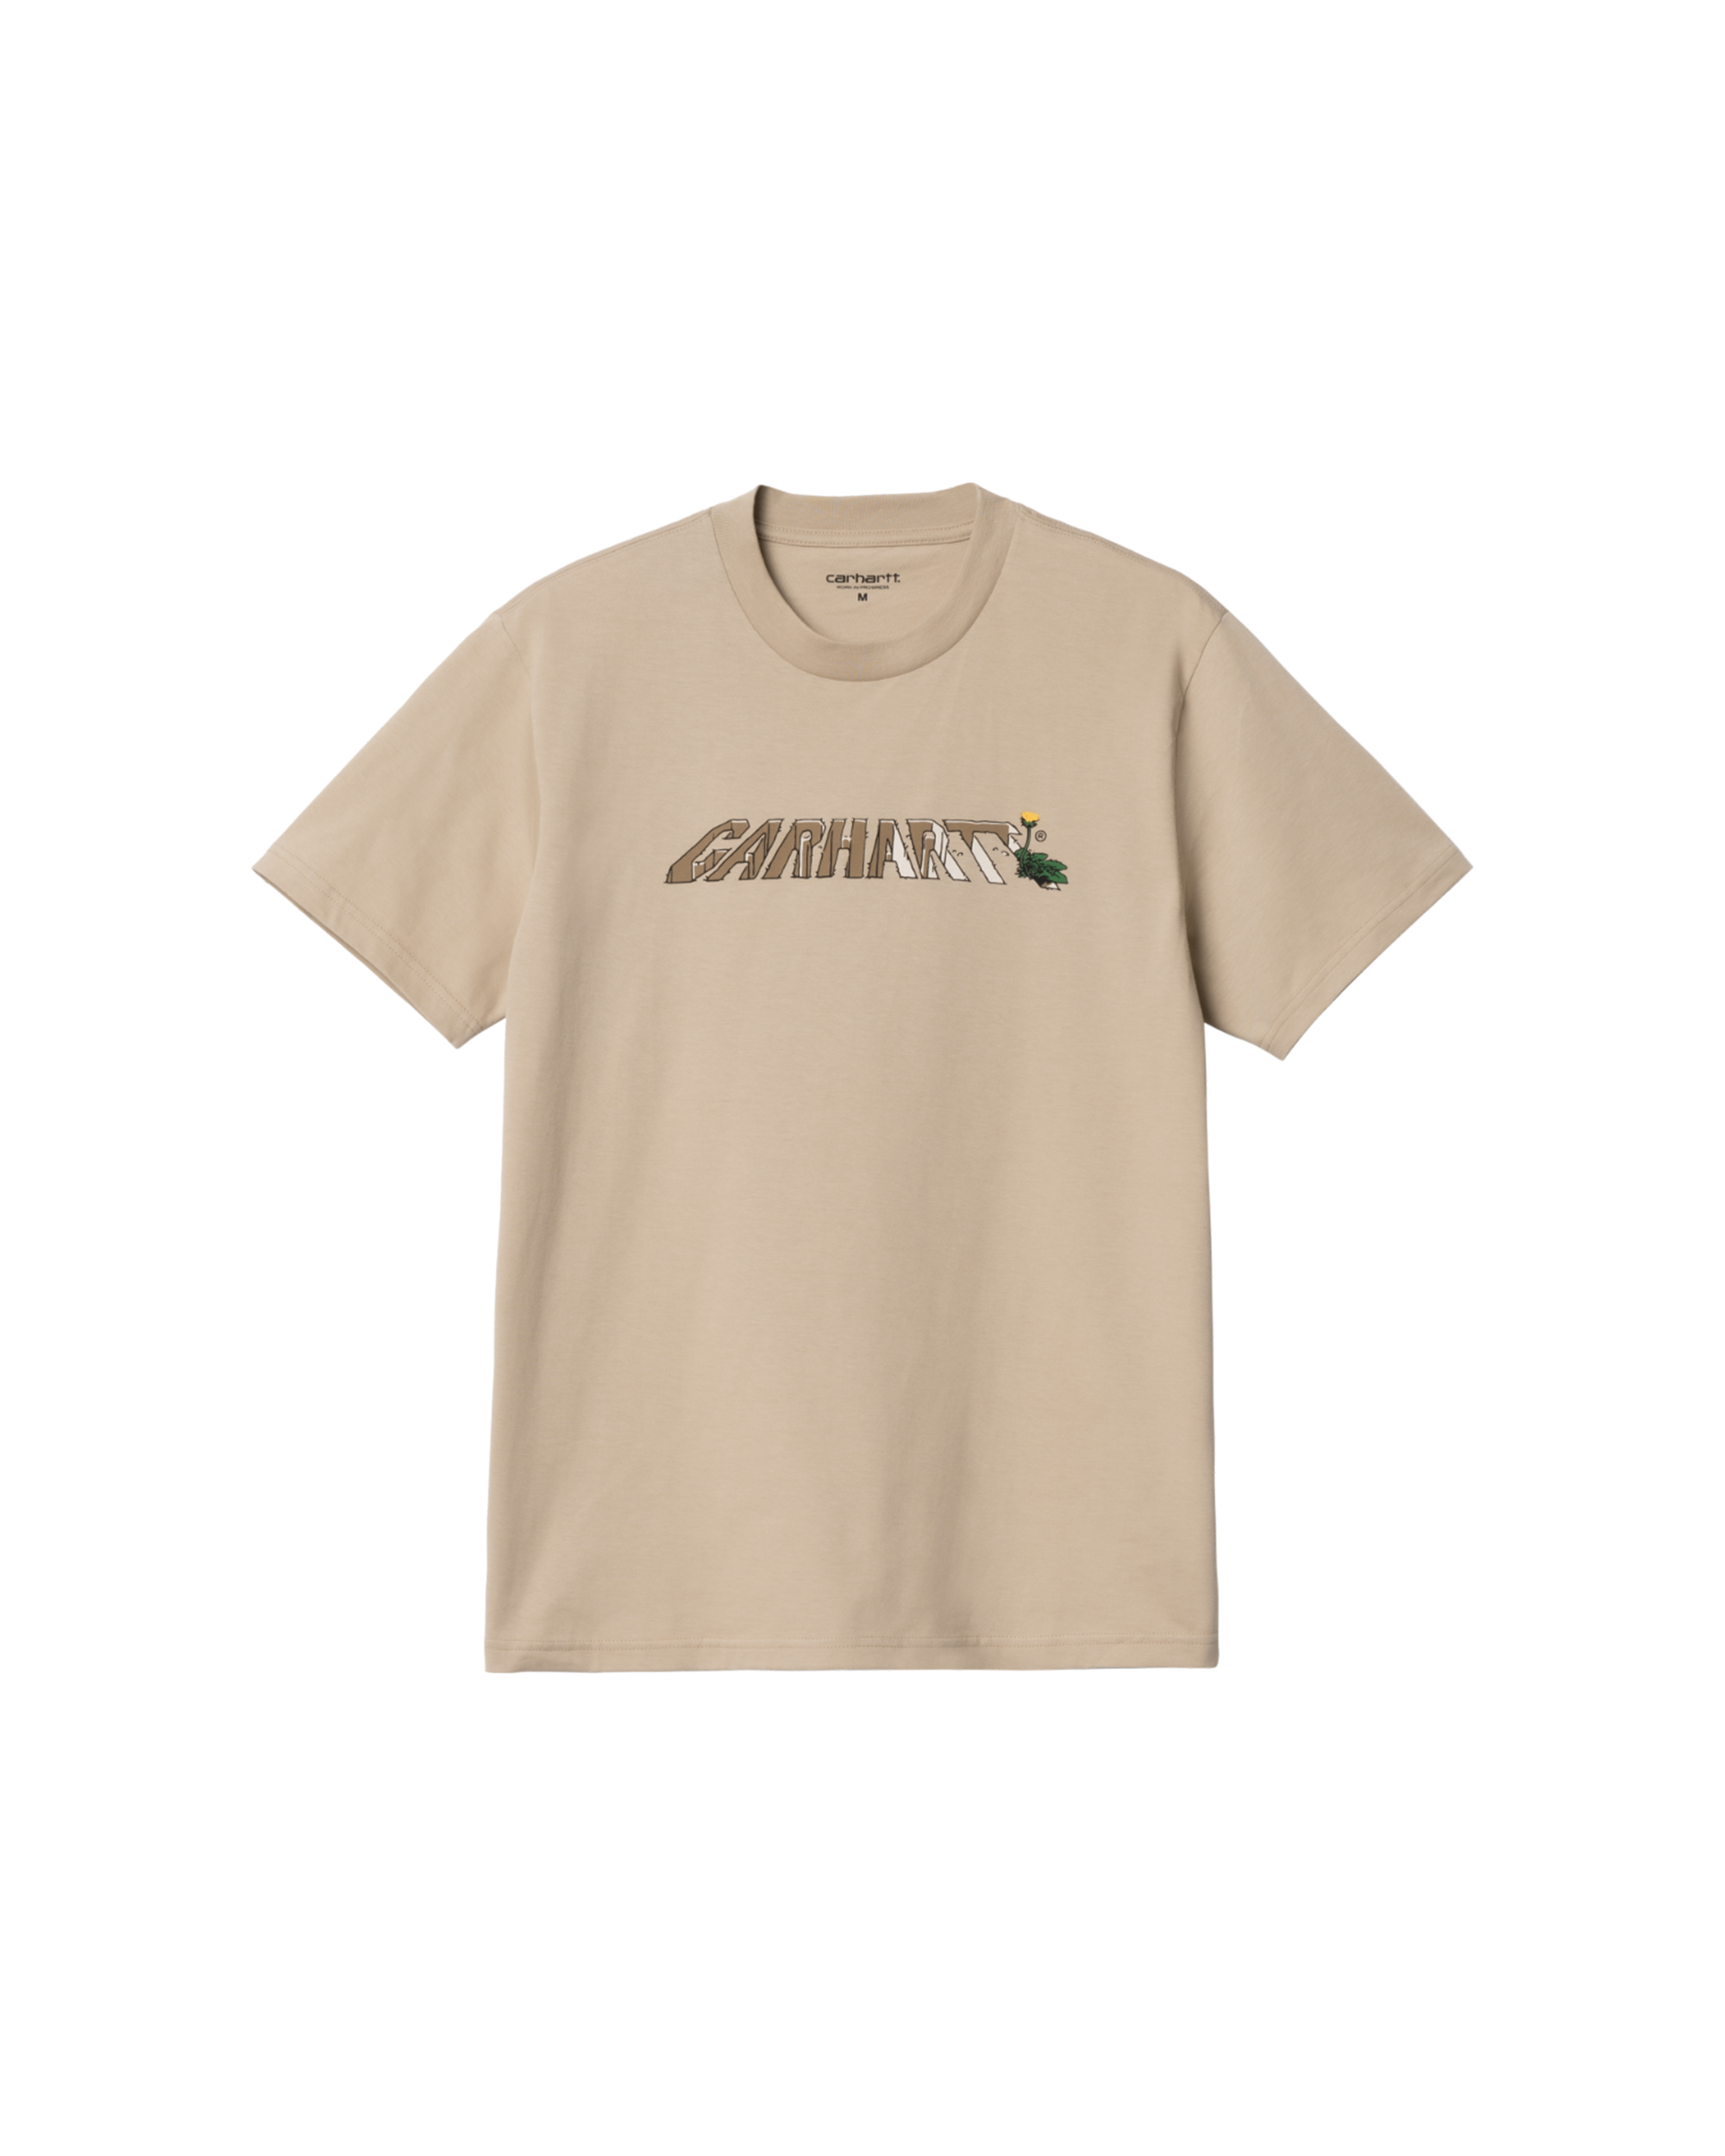 S/S Dandelion Script T-Shirt - Wall